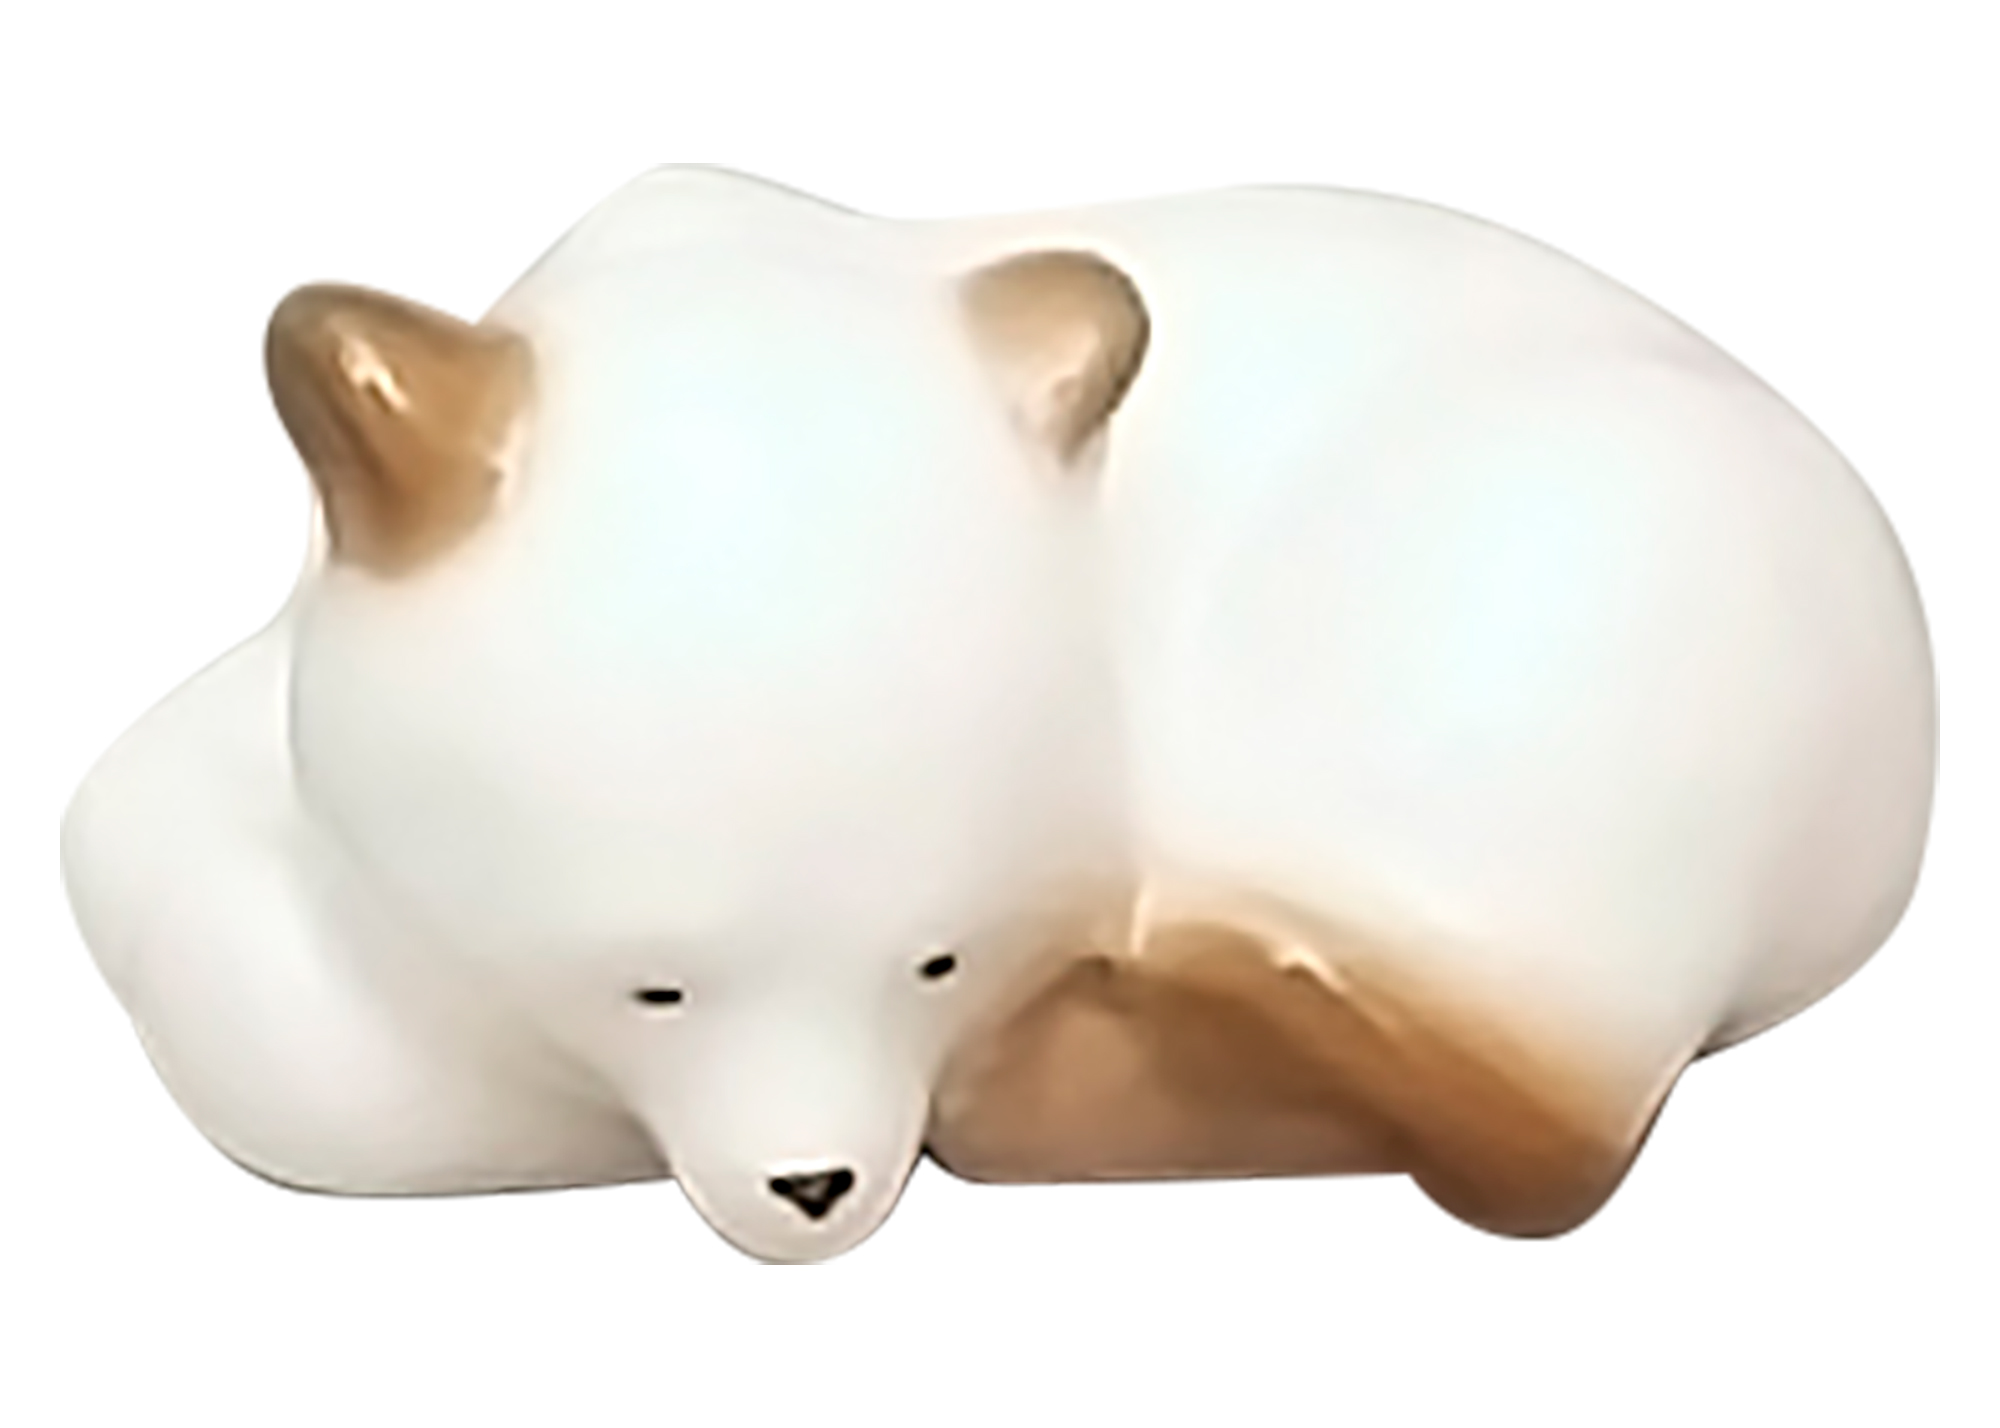 Buy Фарфоровая статуэтка "Спящий медвежонок (белый)" at GoldenCockerel.com